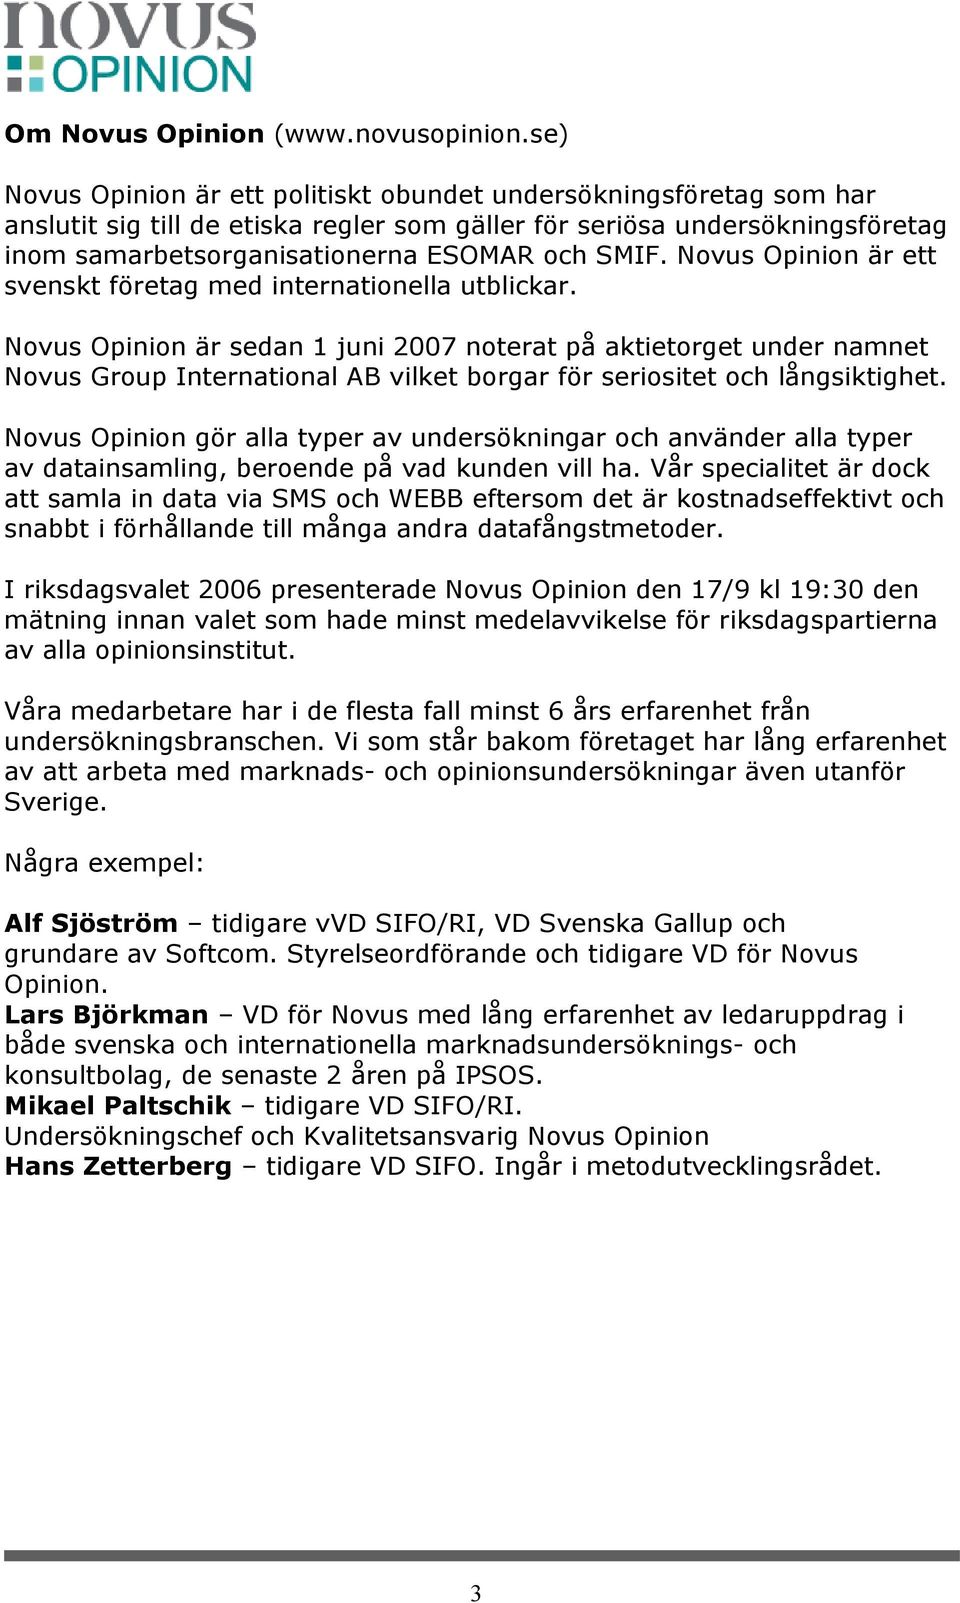 Novus Opinion är ett svenskt företag med internationella utblickar.